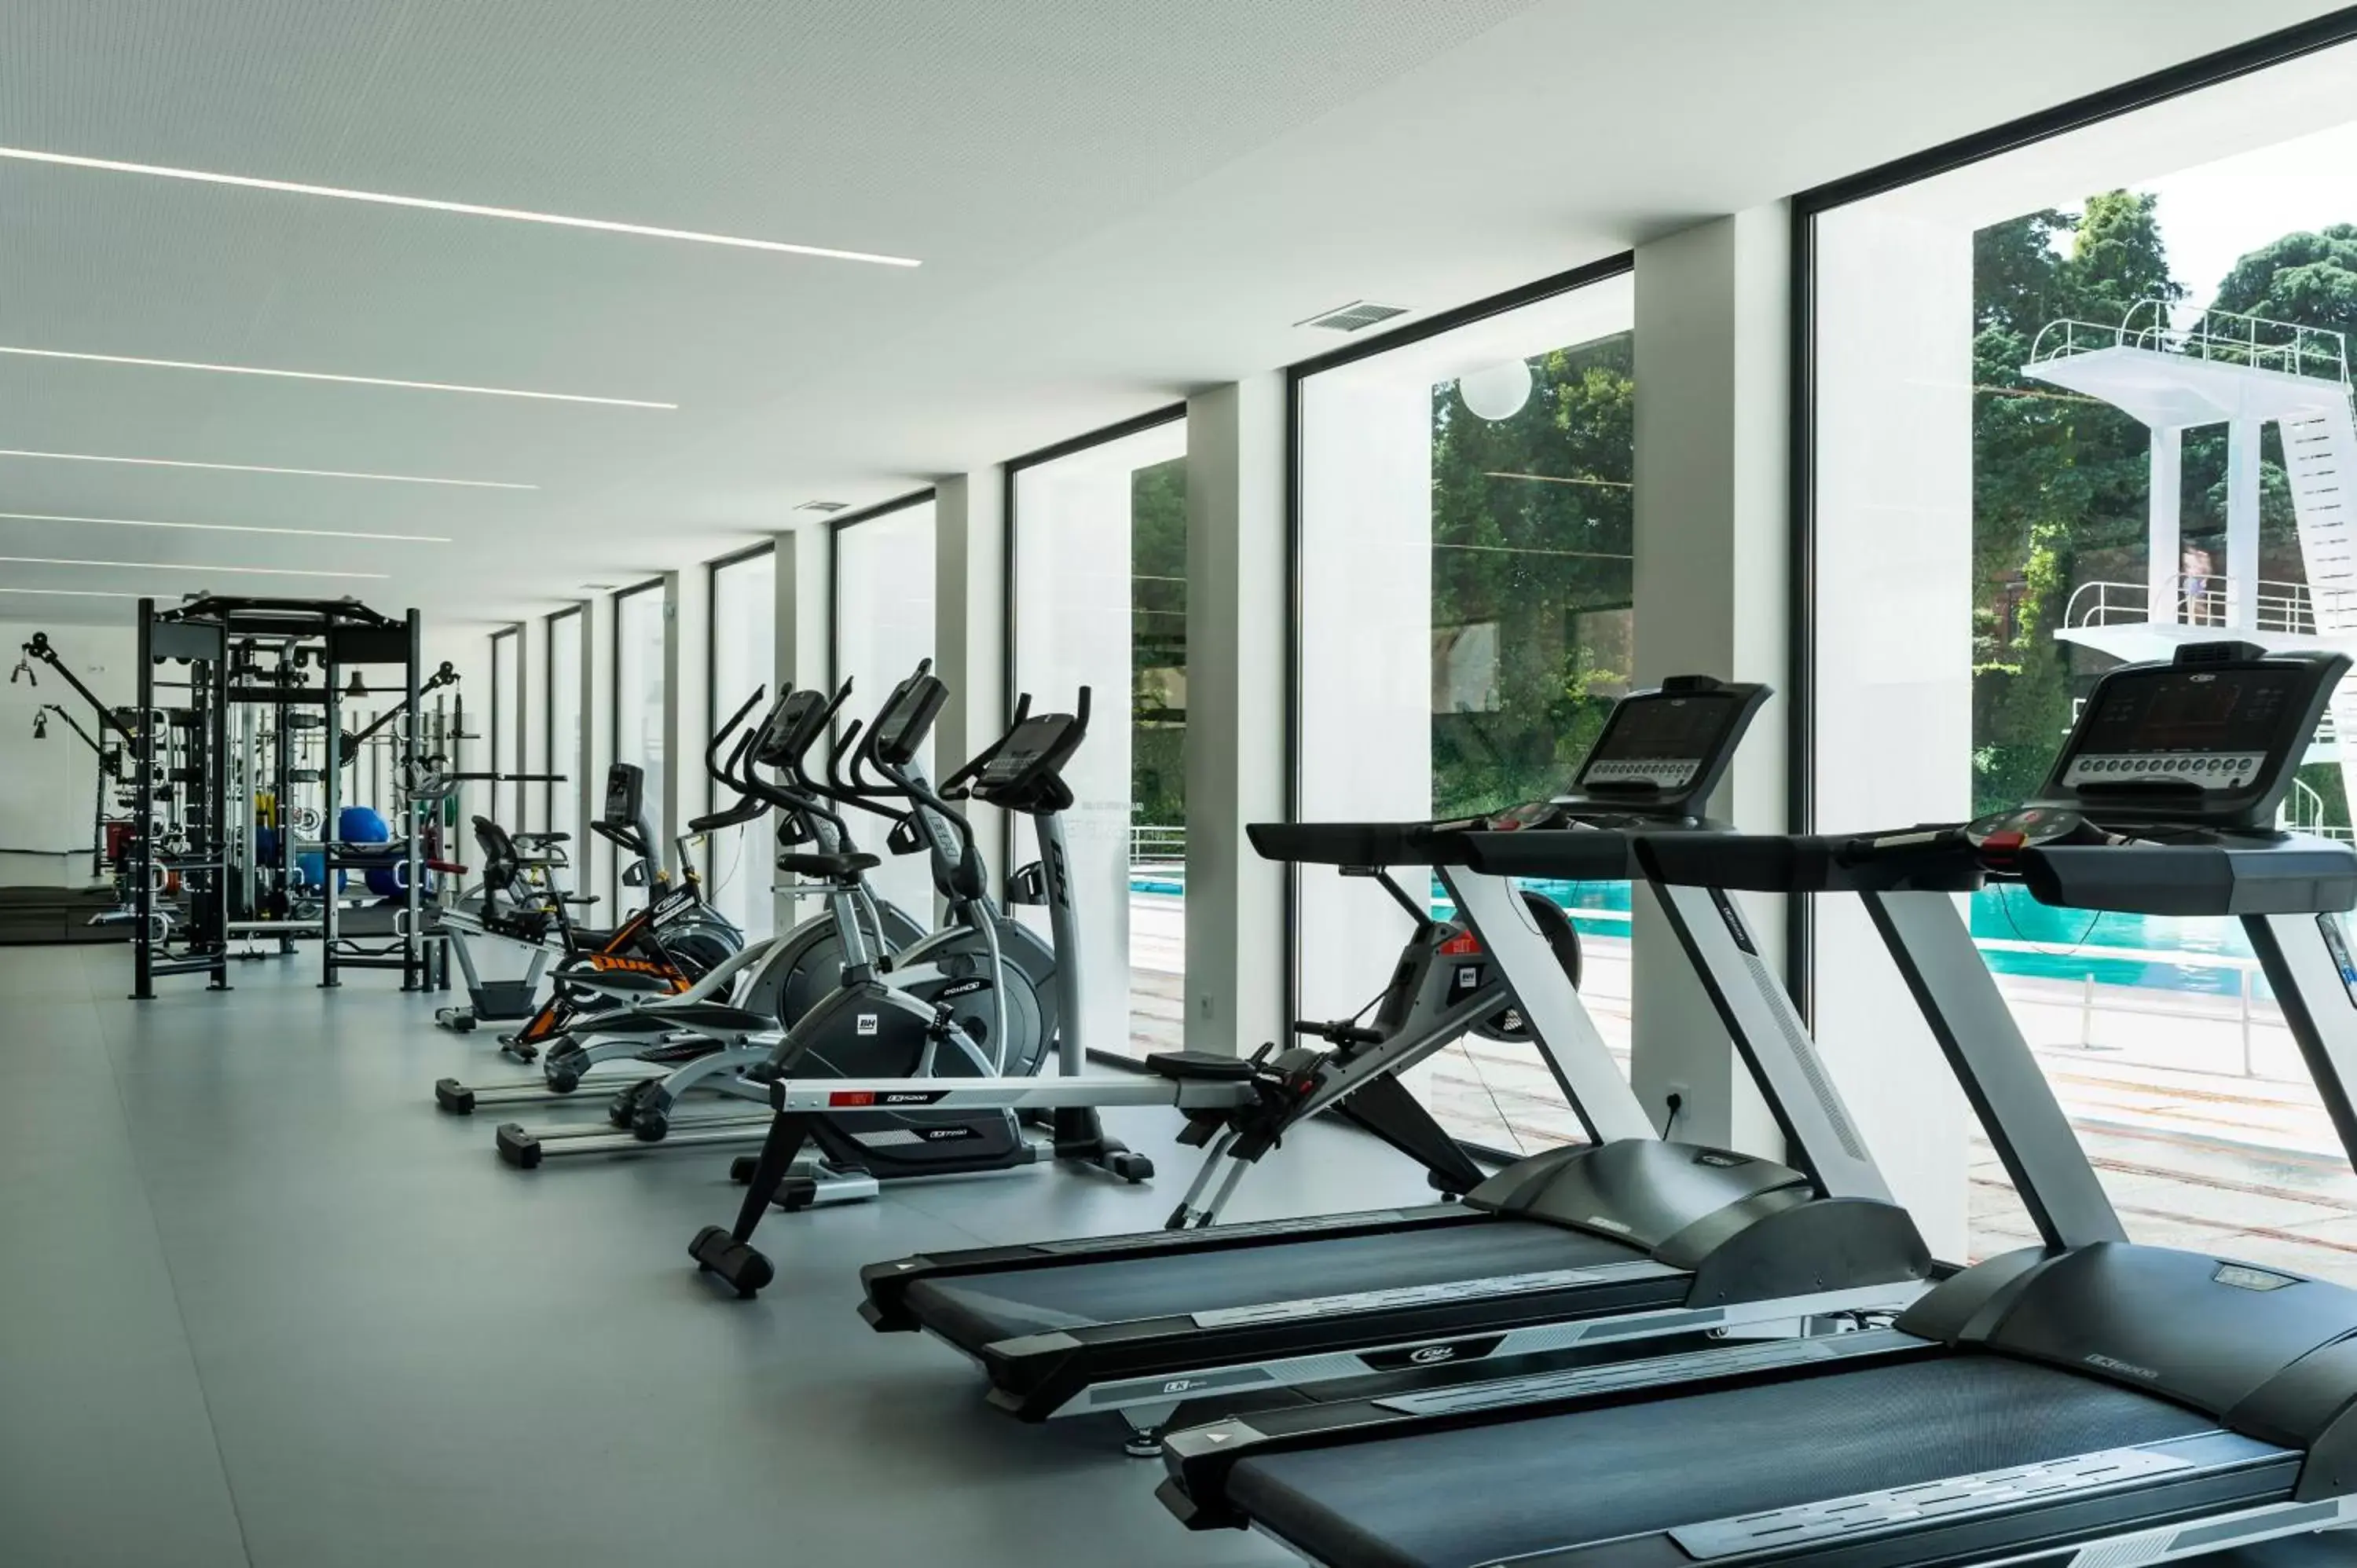 Fitness centre/facilities, Fitness Center/Facilities in Grande Hotel De Luso